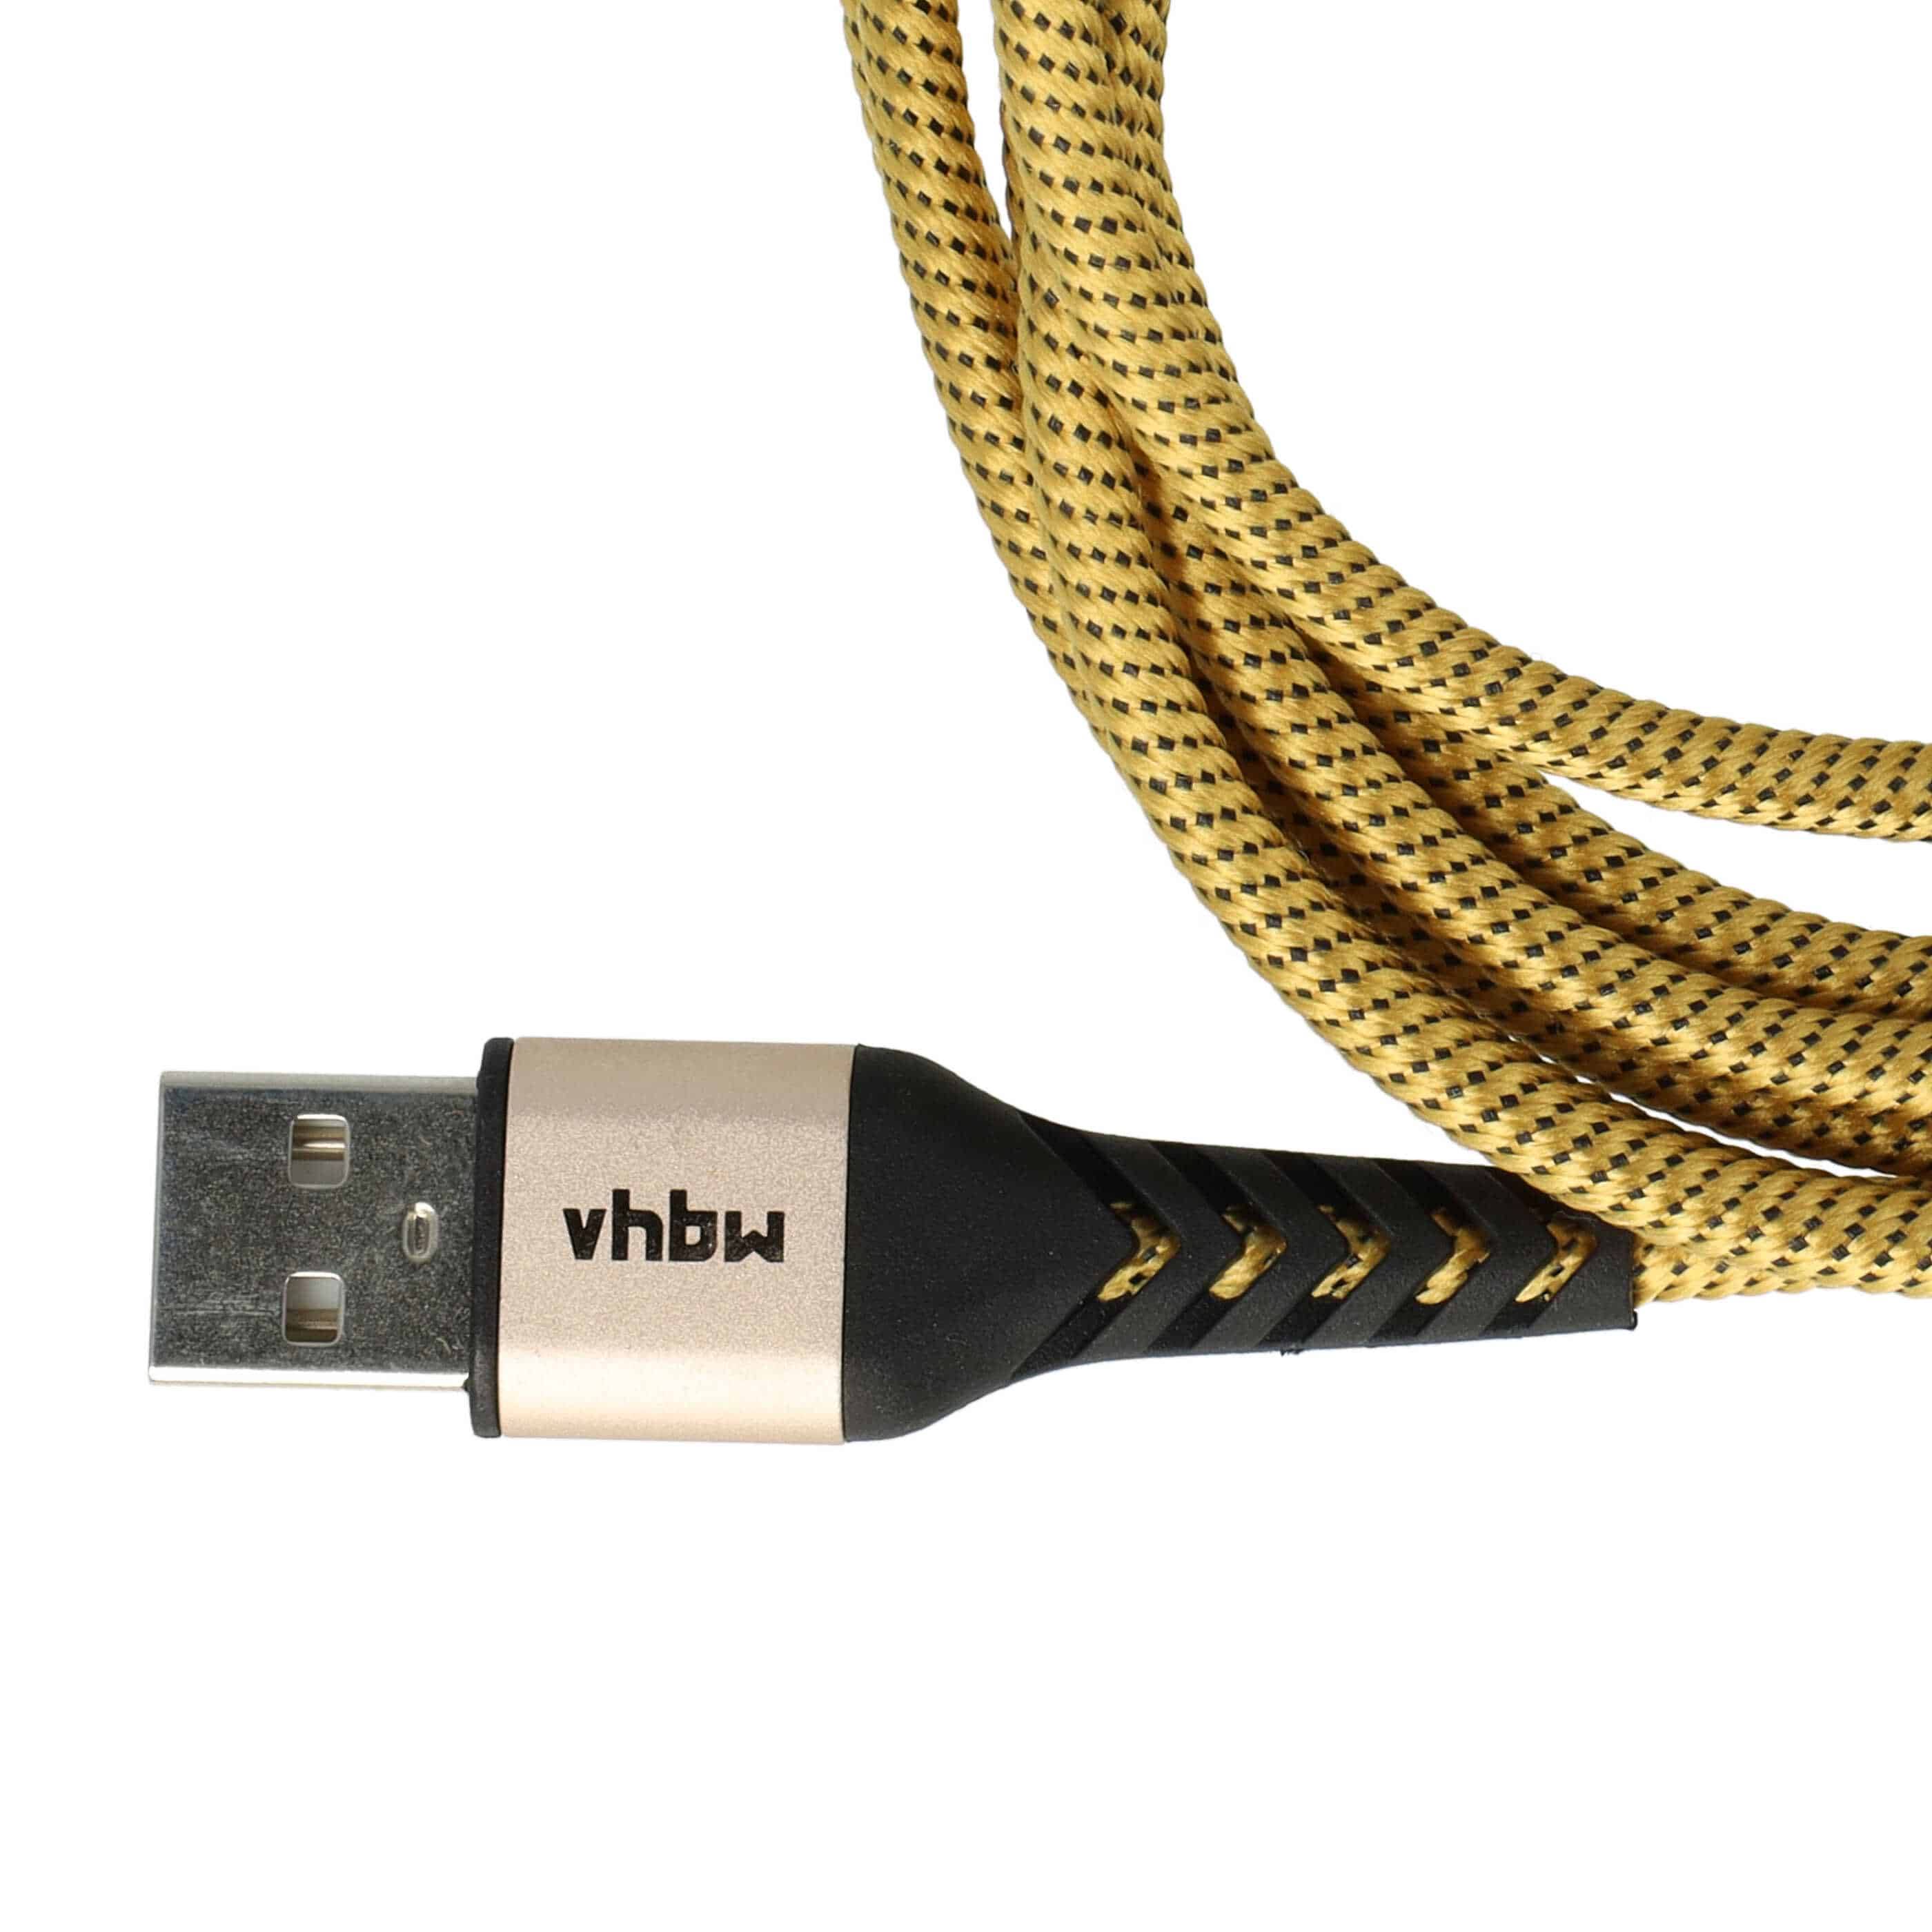 2x Câbles Lightning vers USB A pour iOS - noir / jaune, 180cm